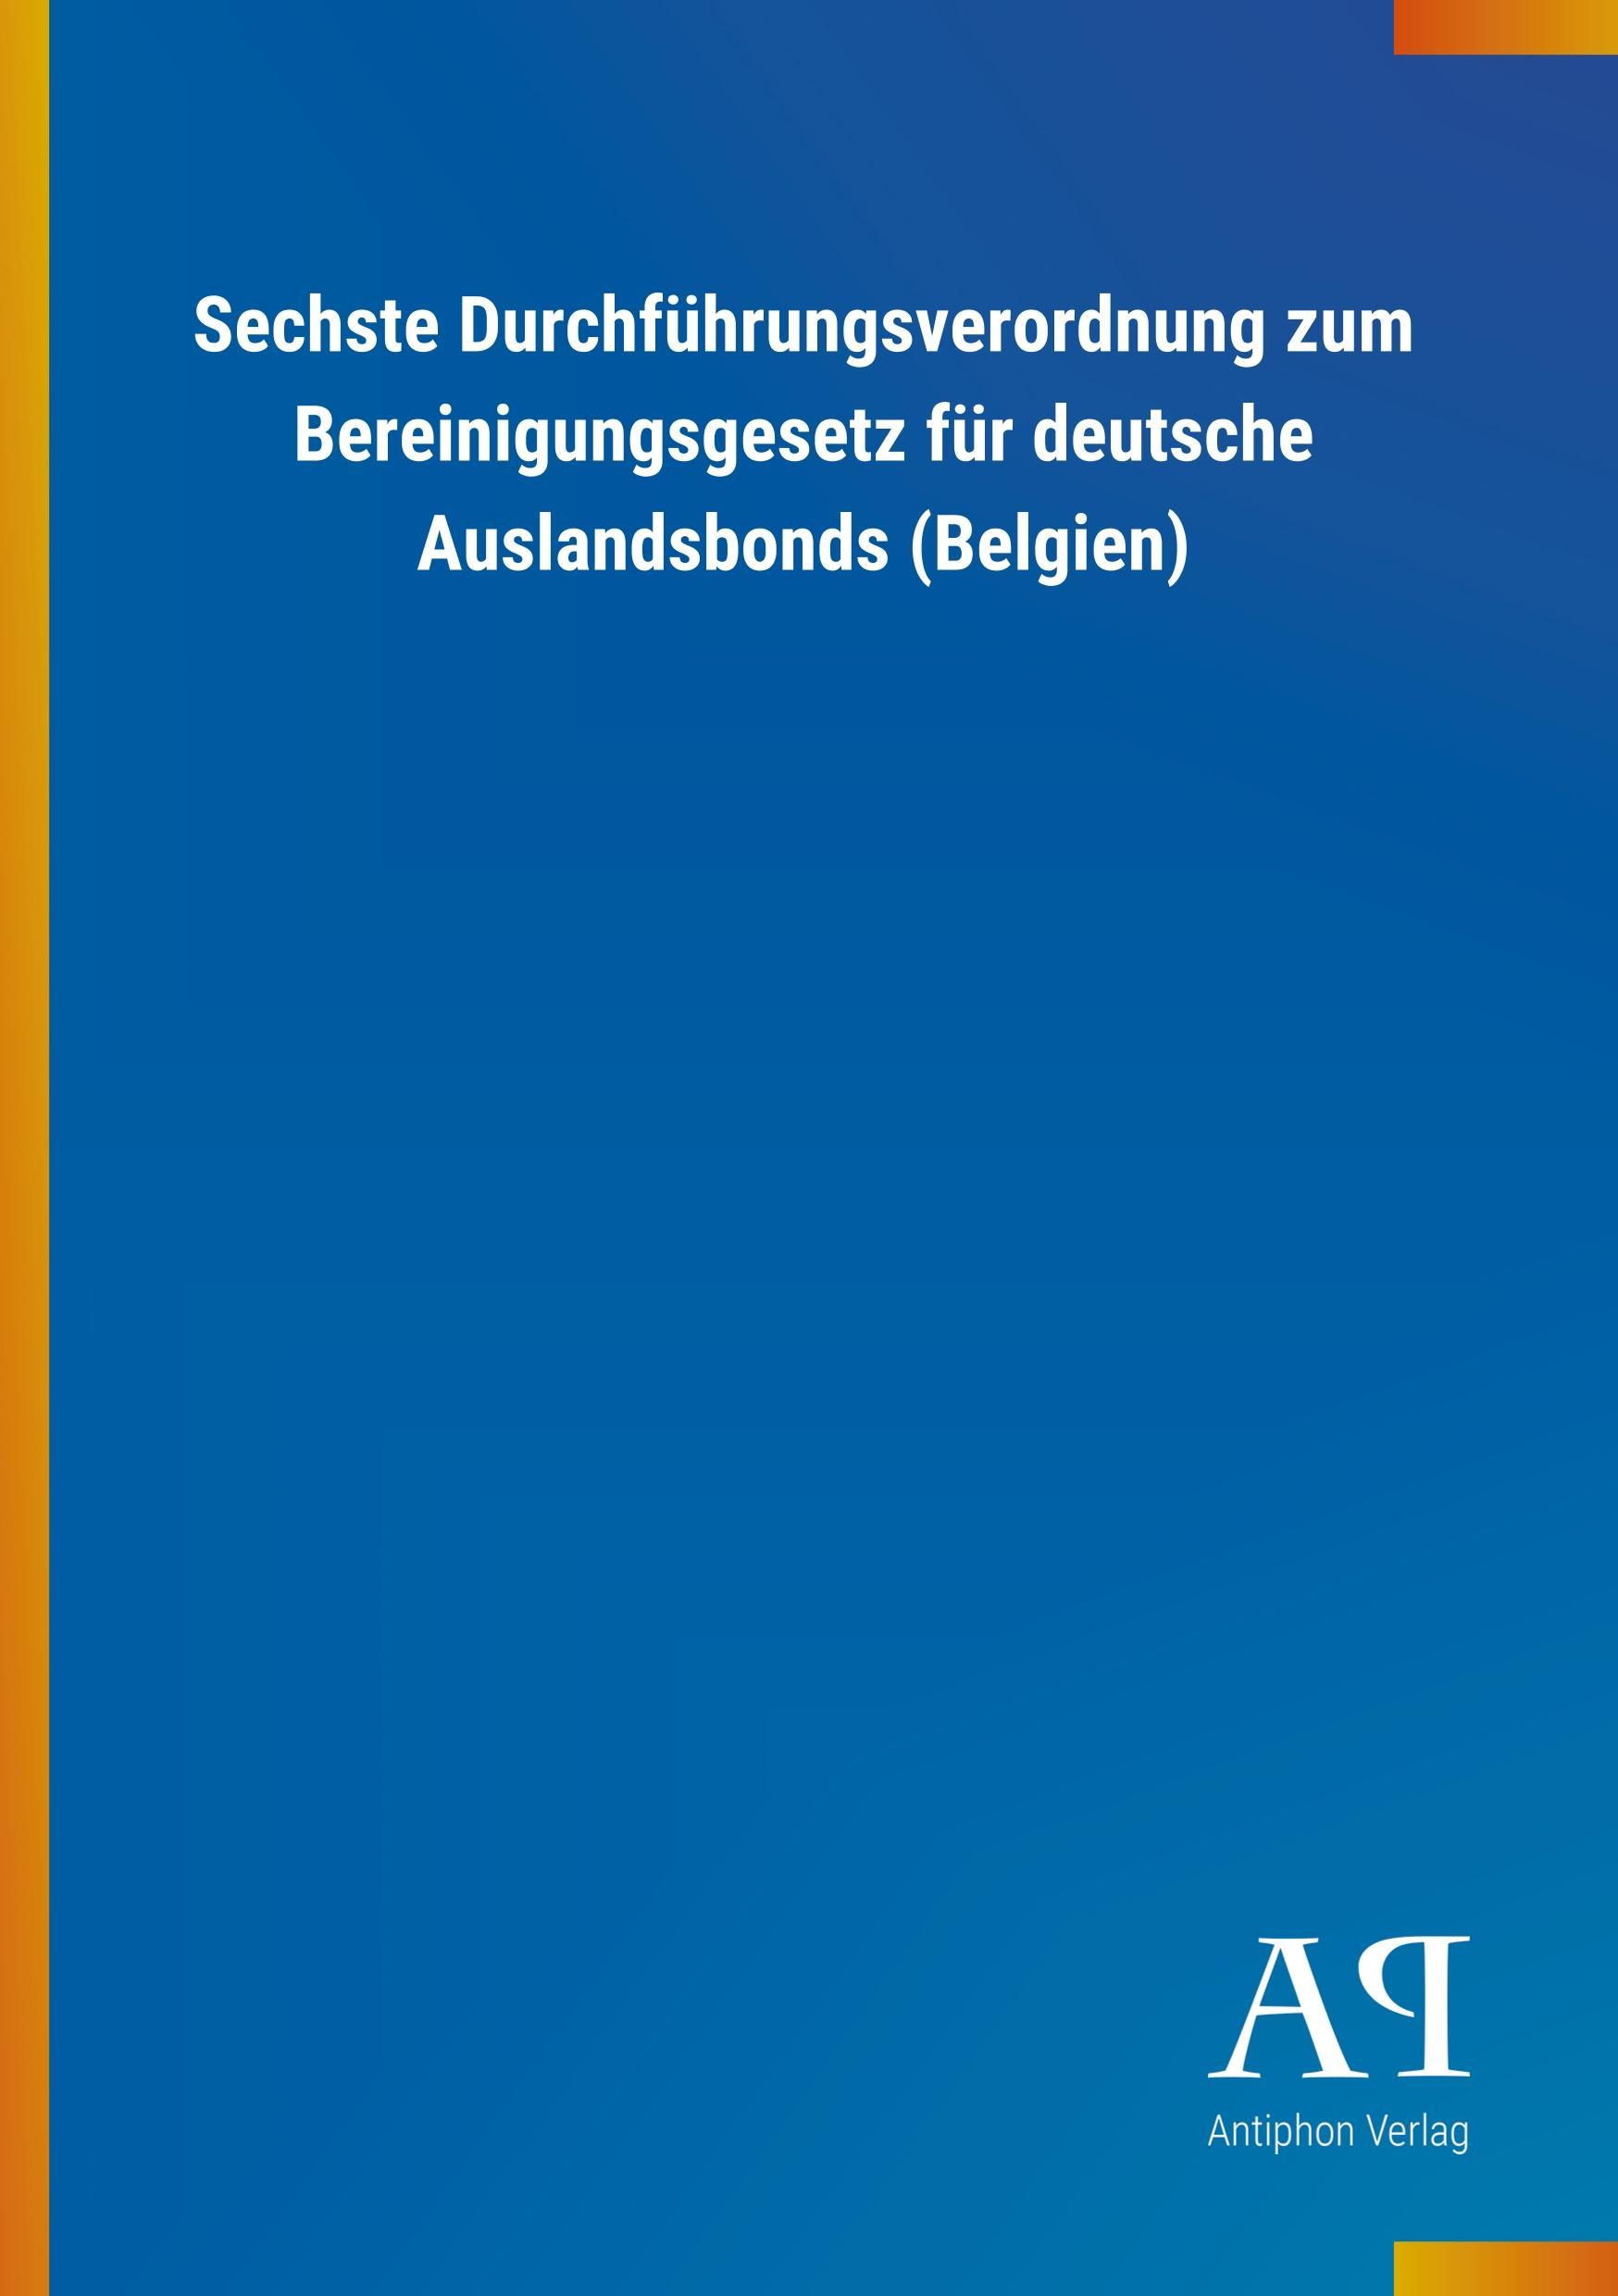 Sechste Durchfuehrungsverordnung zum Bereinigungsgesetz fuer deutsche Auslandsbonds (Belgien) - Antiphon Verlag